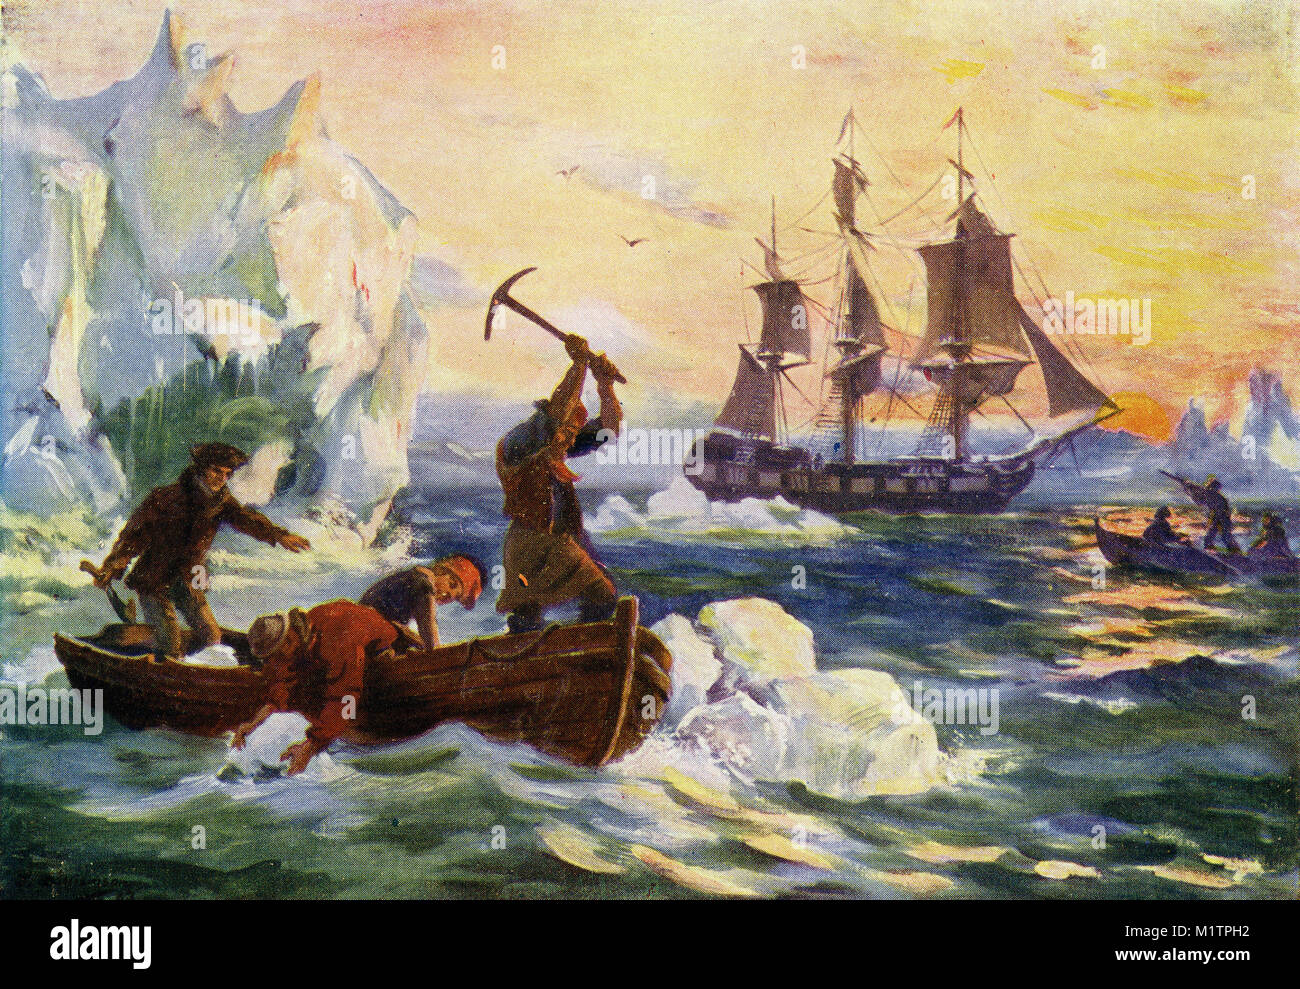 Halbton Abbildung: arktisforscher sammeln Eisberge für frisches Wasser zu schmelzen, während andere Seevögel für Essen, ca. 1900 schießen. Von einem ursprünglichen Bild, wie andere Menschen leben von H. Clive Barnard, 1918. Stockfoto